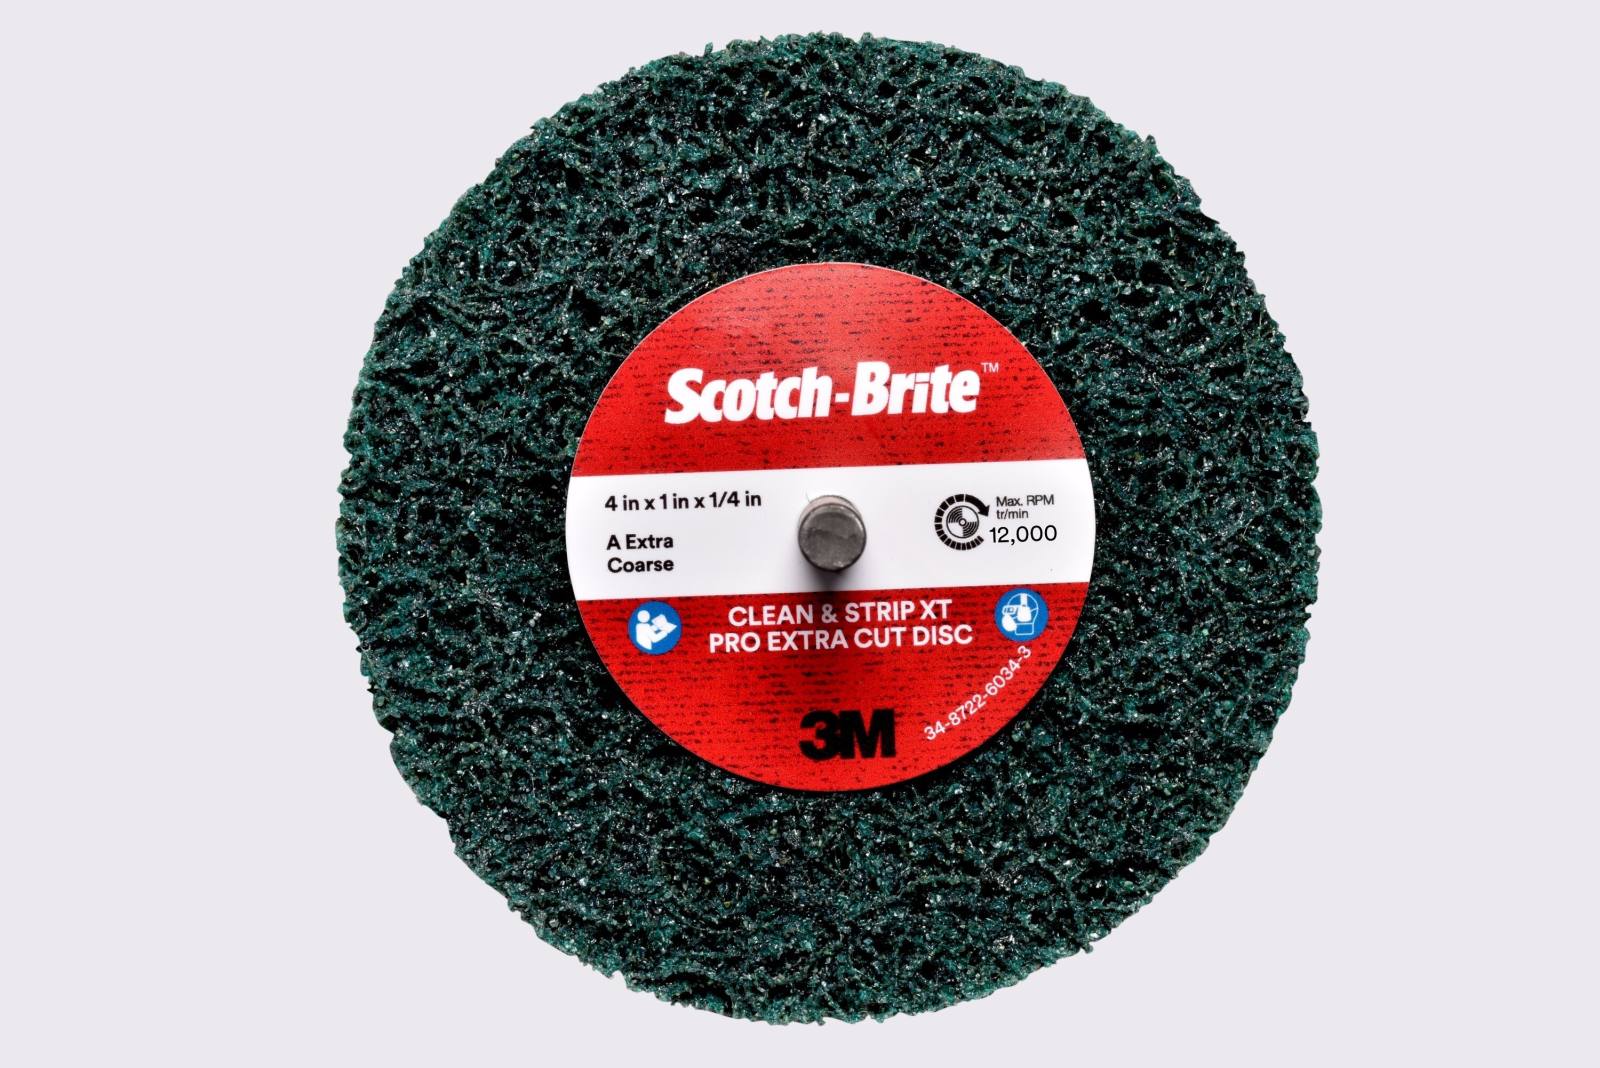 3M Scotch-Brite disco per pulizia grossolana XT-ZS Pro Extra Cut, 75 mm, 13 mm, 6 mm, A, extra grossolano